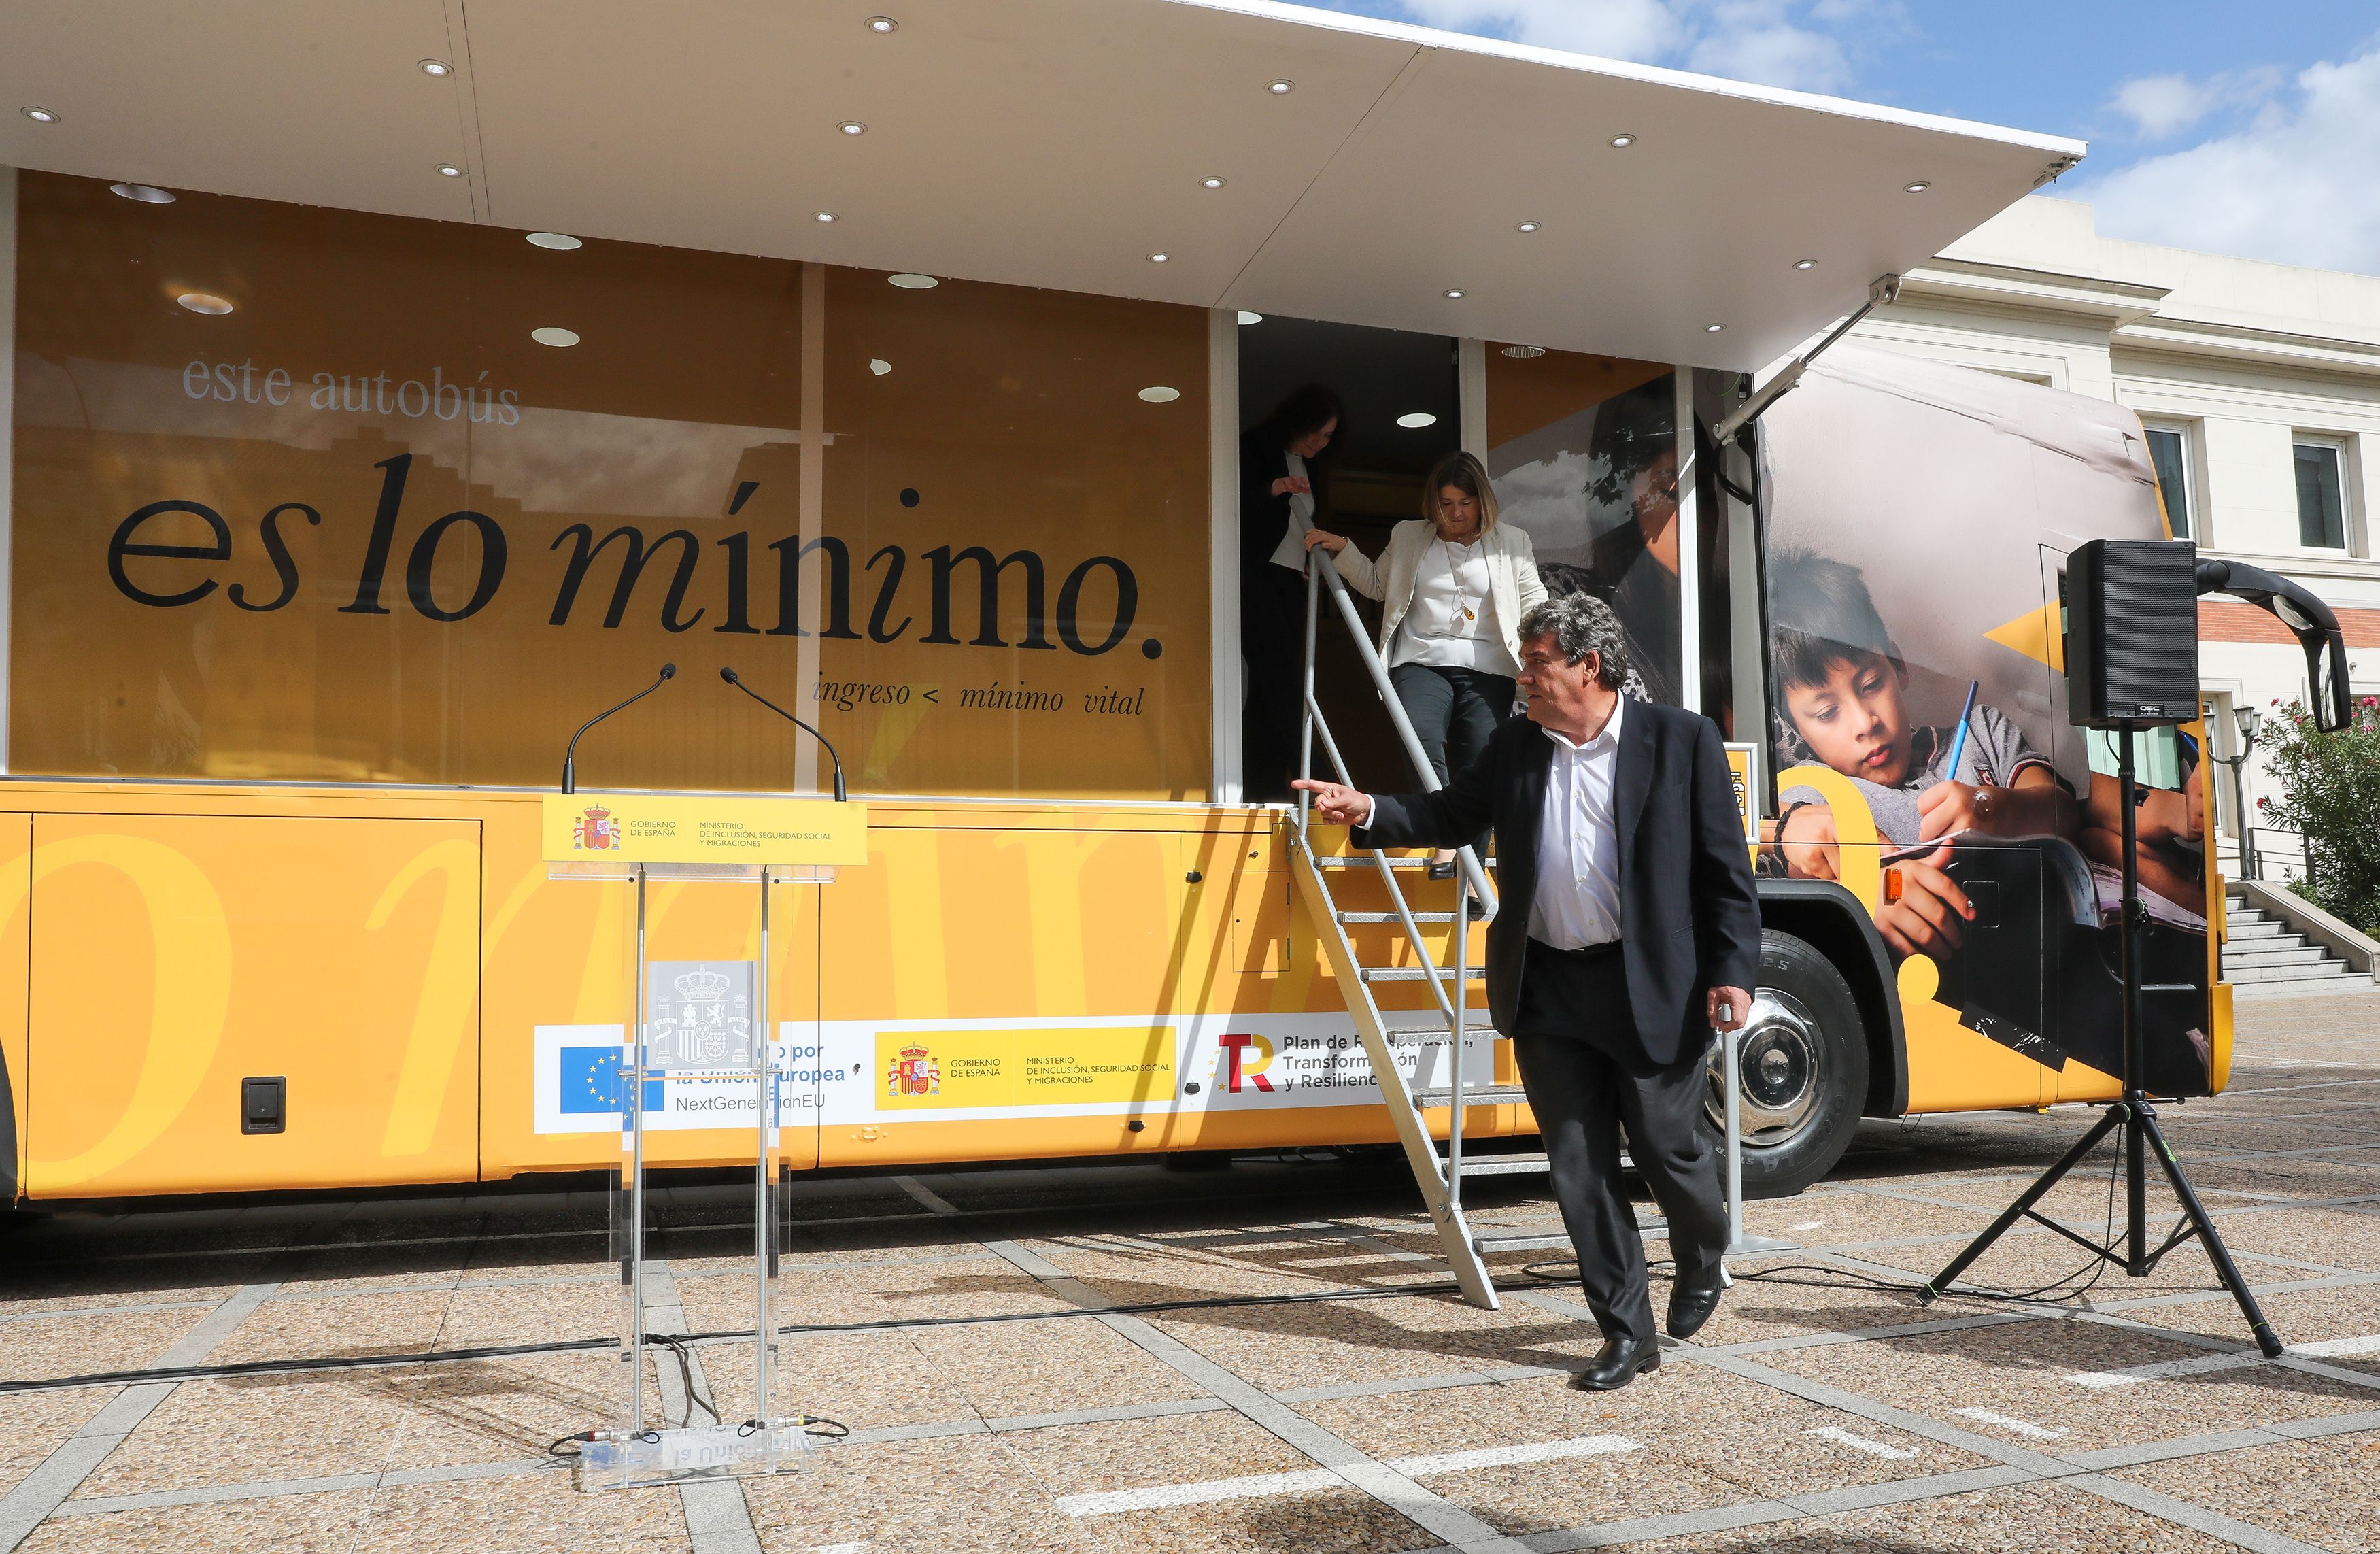 Escrivá arranca el autobús del Ingreso Mínimo Vital, que recorrerá 40 municipios españoles